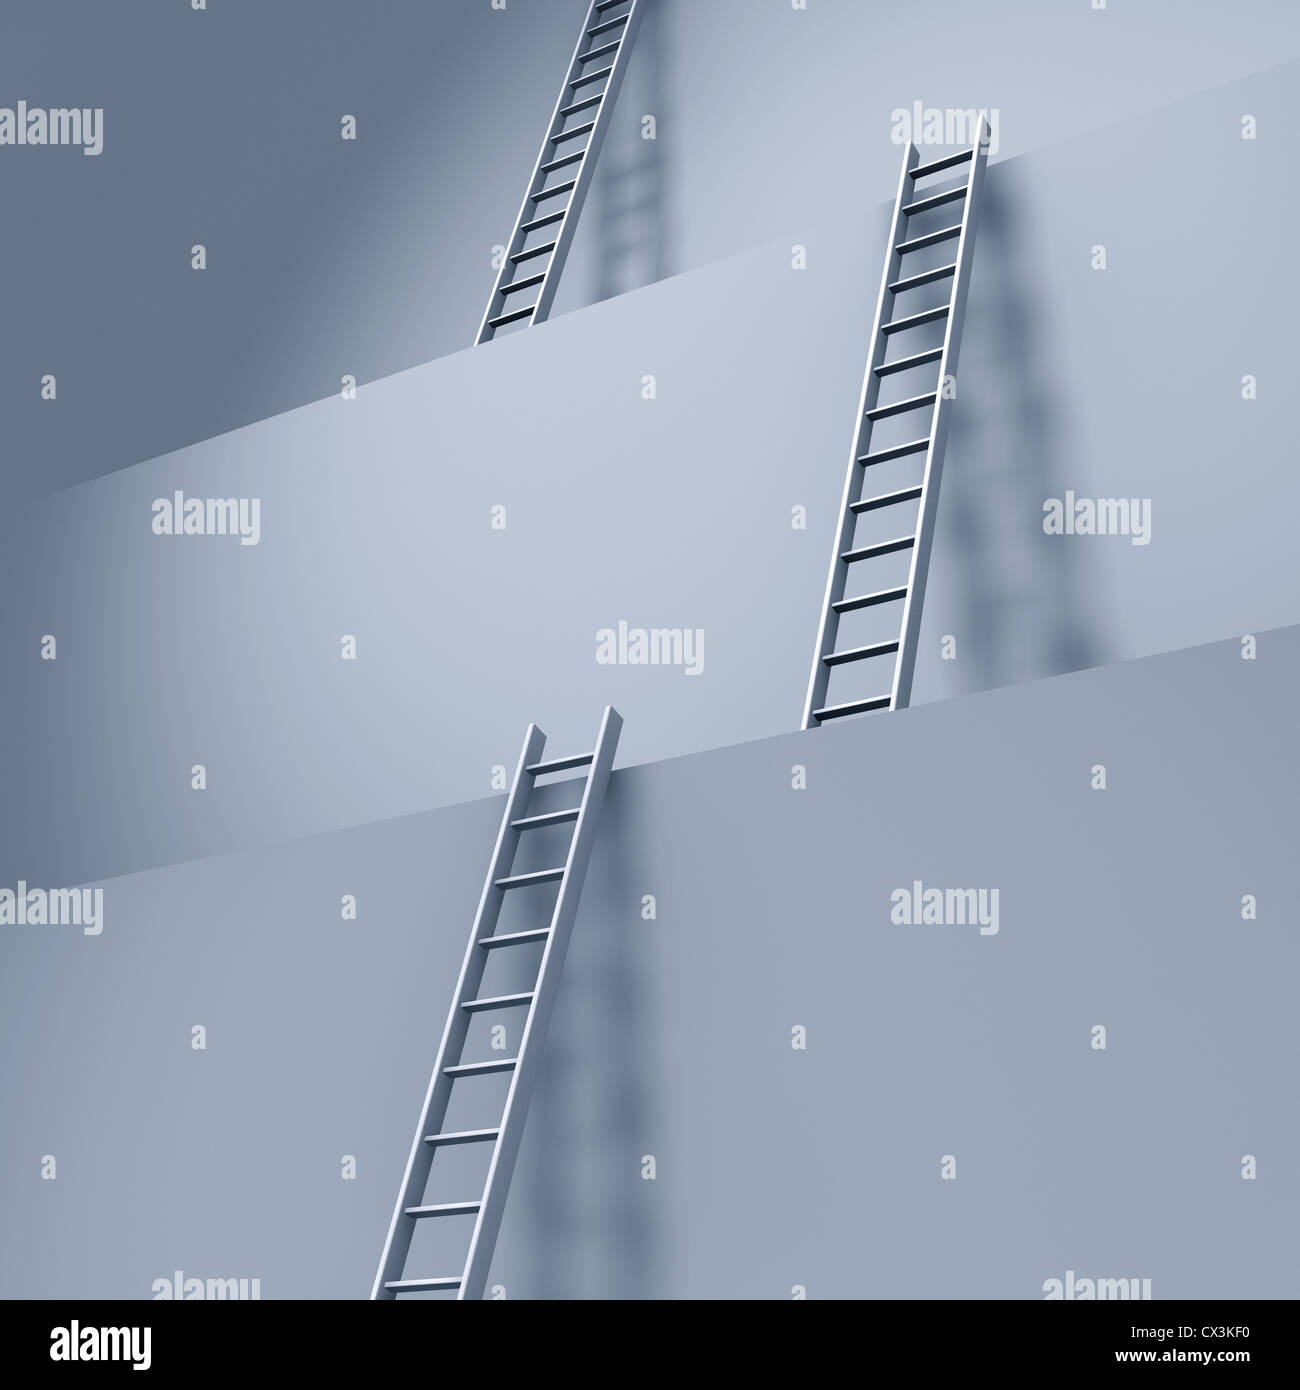 Leitern / Aufstiegsmöglichkeit an riesigen Stufen - ladders on giant steps Stock Photo